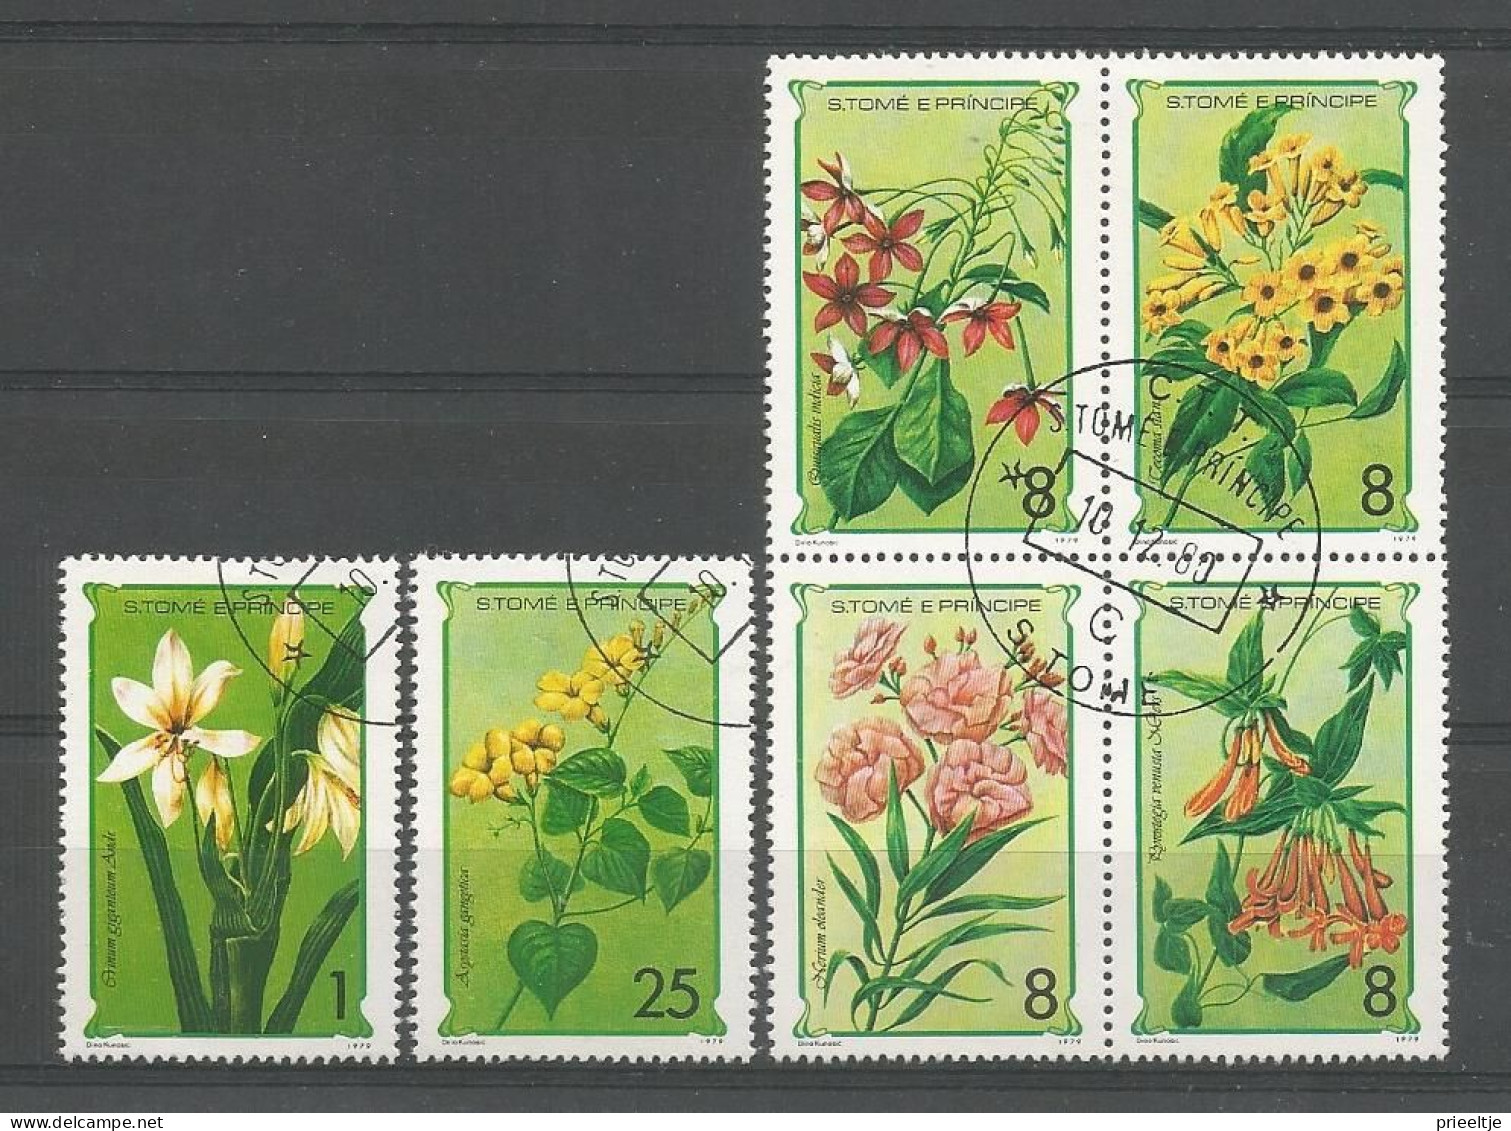 St Tome E Principe 1979 Flowers Y.T. 536/541 (0) - Sao Tome Et Principe